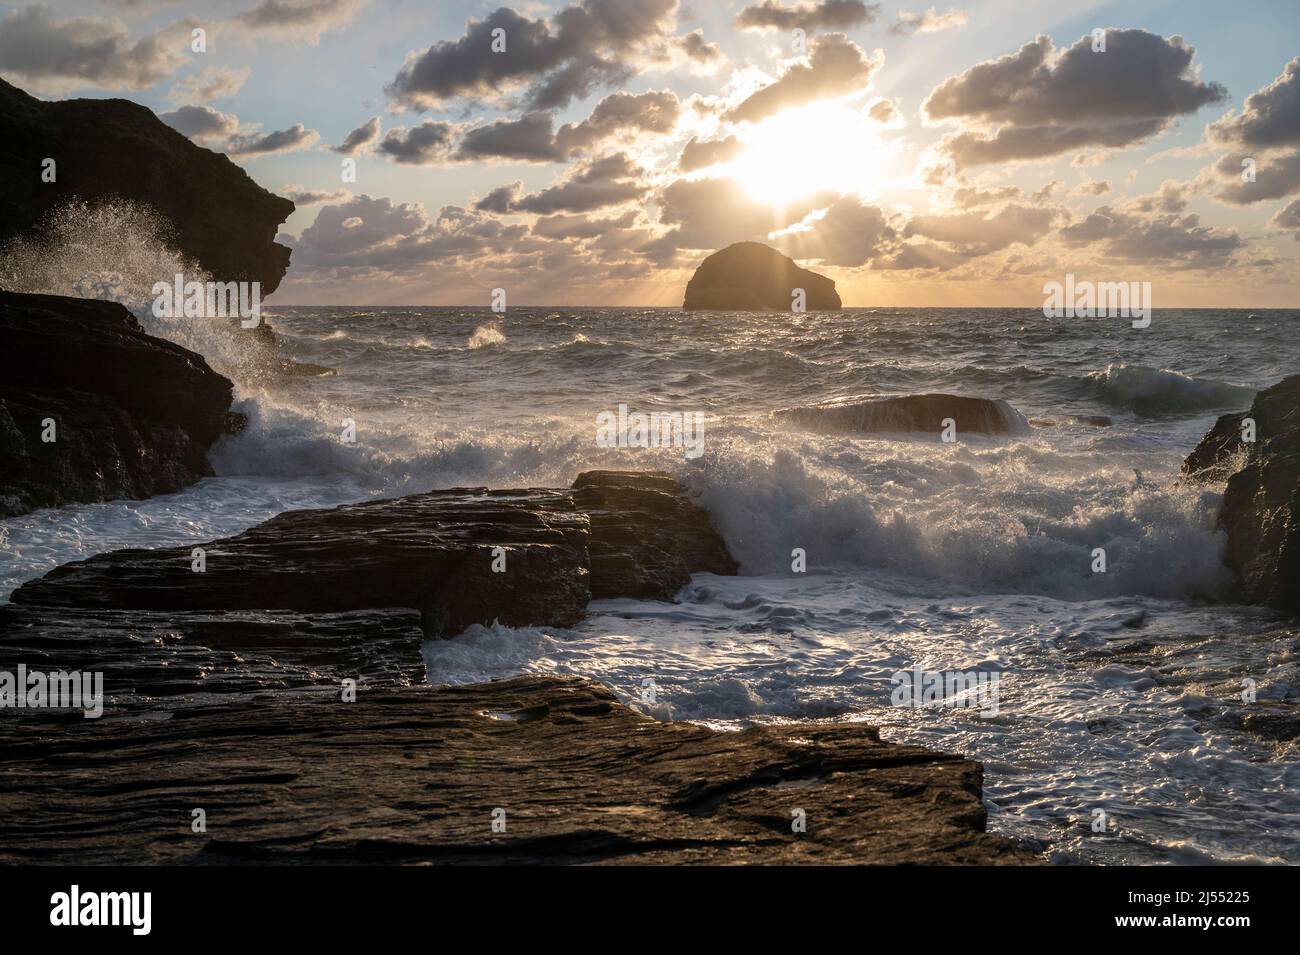 Mer de tempête au coucher du soleil à Trebarwith Strand, nord de Cornwall au Royaume-Uni, avec l'île de Gull Rock, des falaises et des jets de mer. Banque D'Images